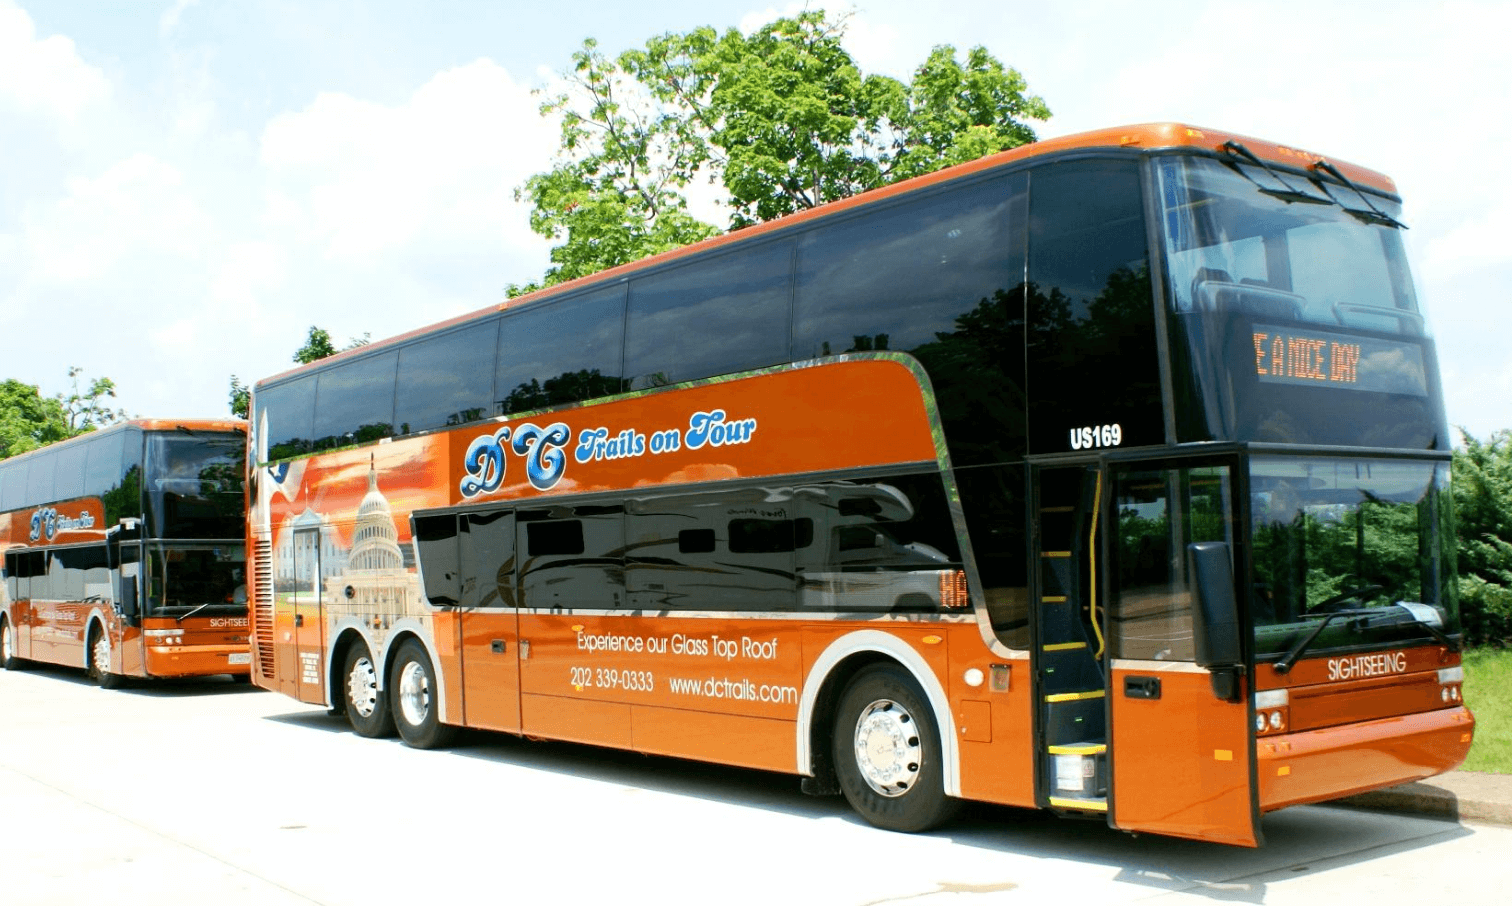 tour bus companies washington dc